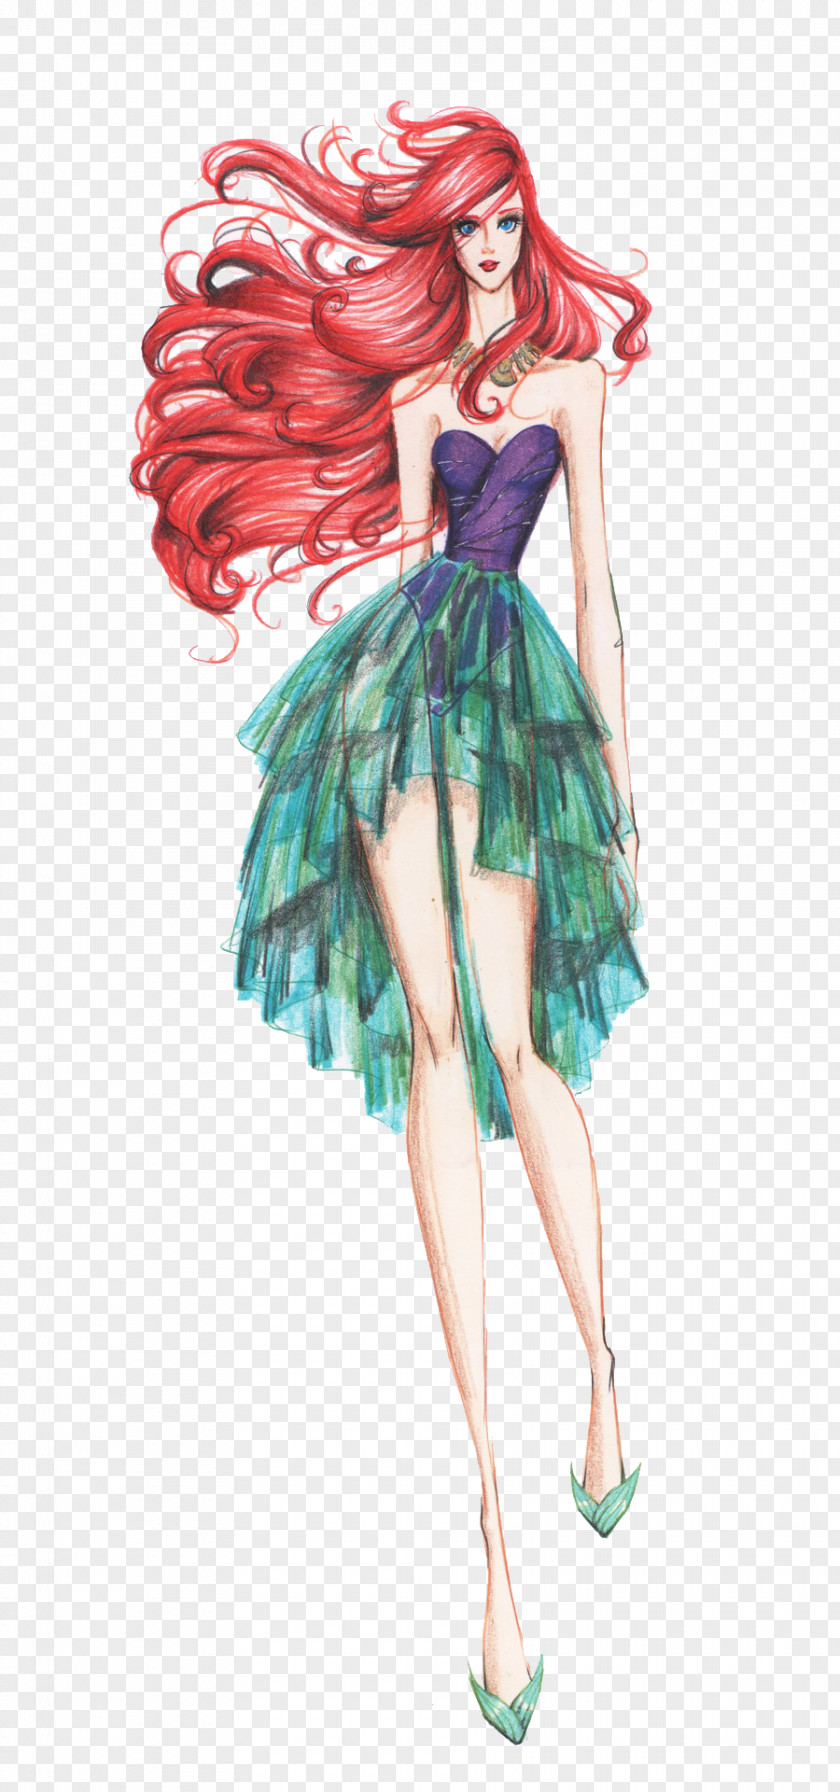 Hand-painted Women's Fashion Design Draft Ariel Rapunzel Princess Aurora Belle Elsa PNG